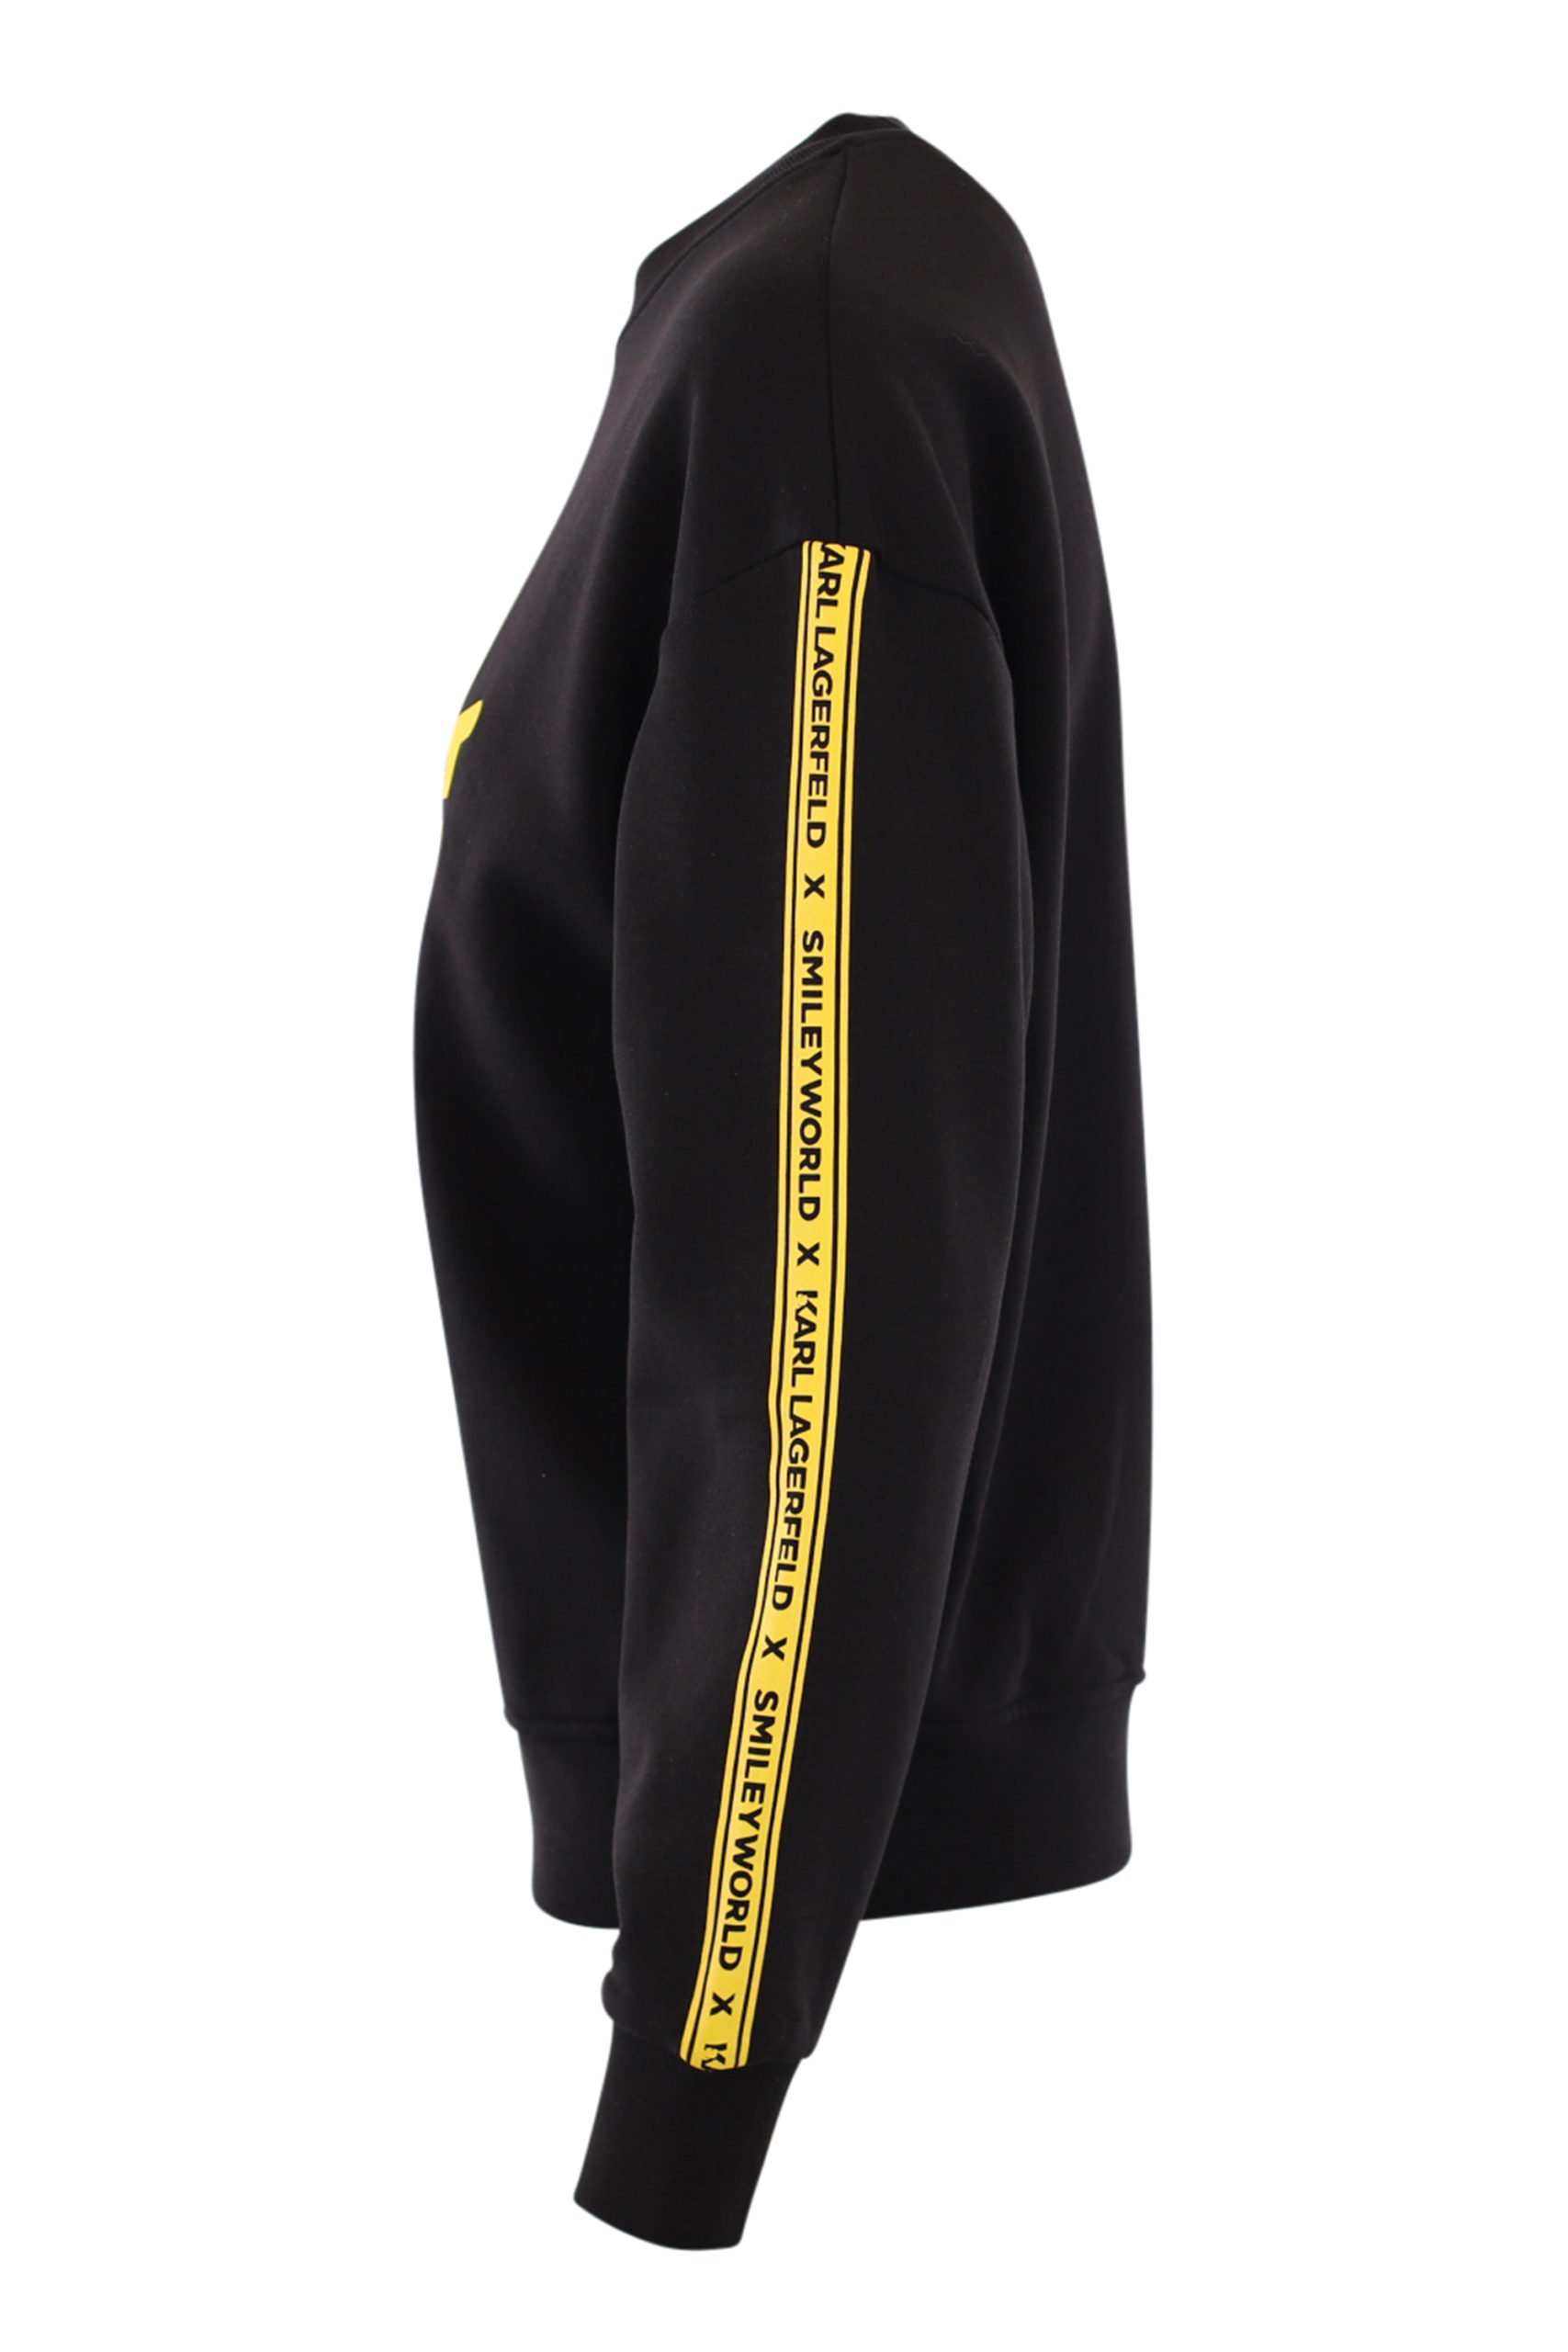 telescopio Sastre étnico Karl Lagerfeld - Sudadera unisex negra con logo amarillo en cinta y  "smiley" - BLS Fashion